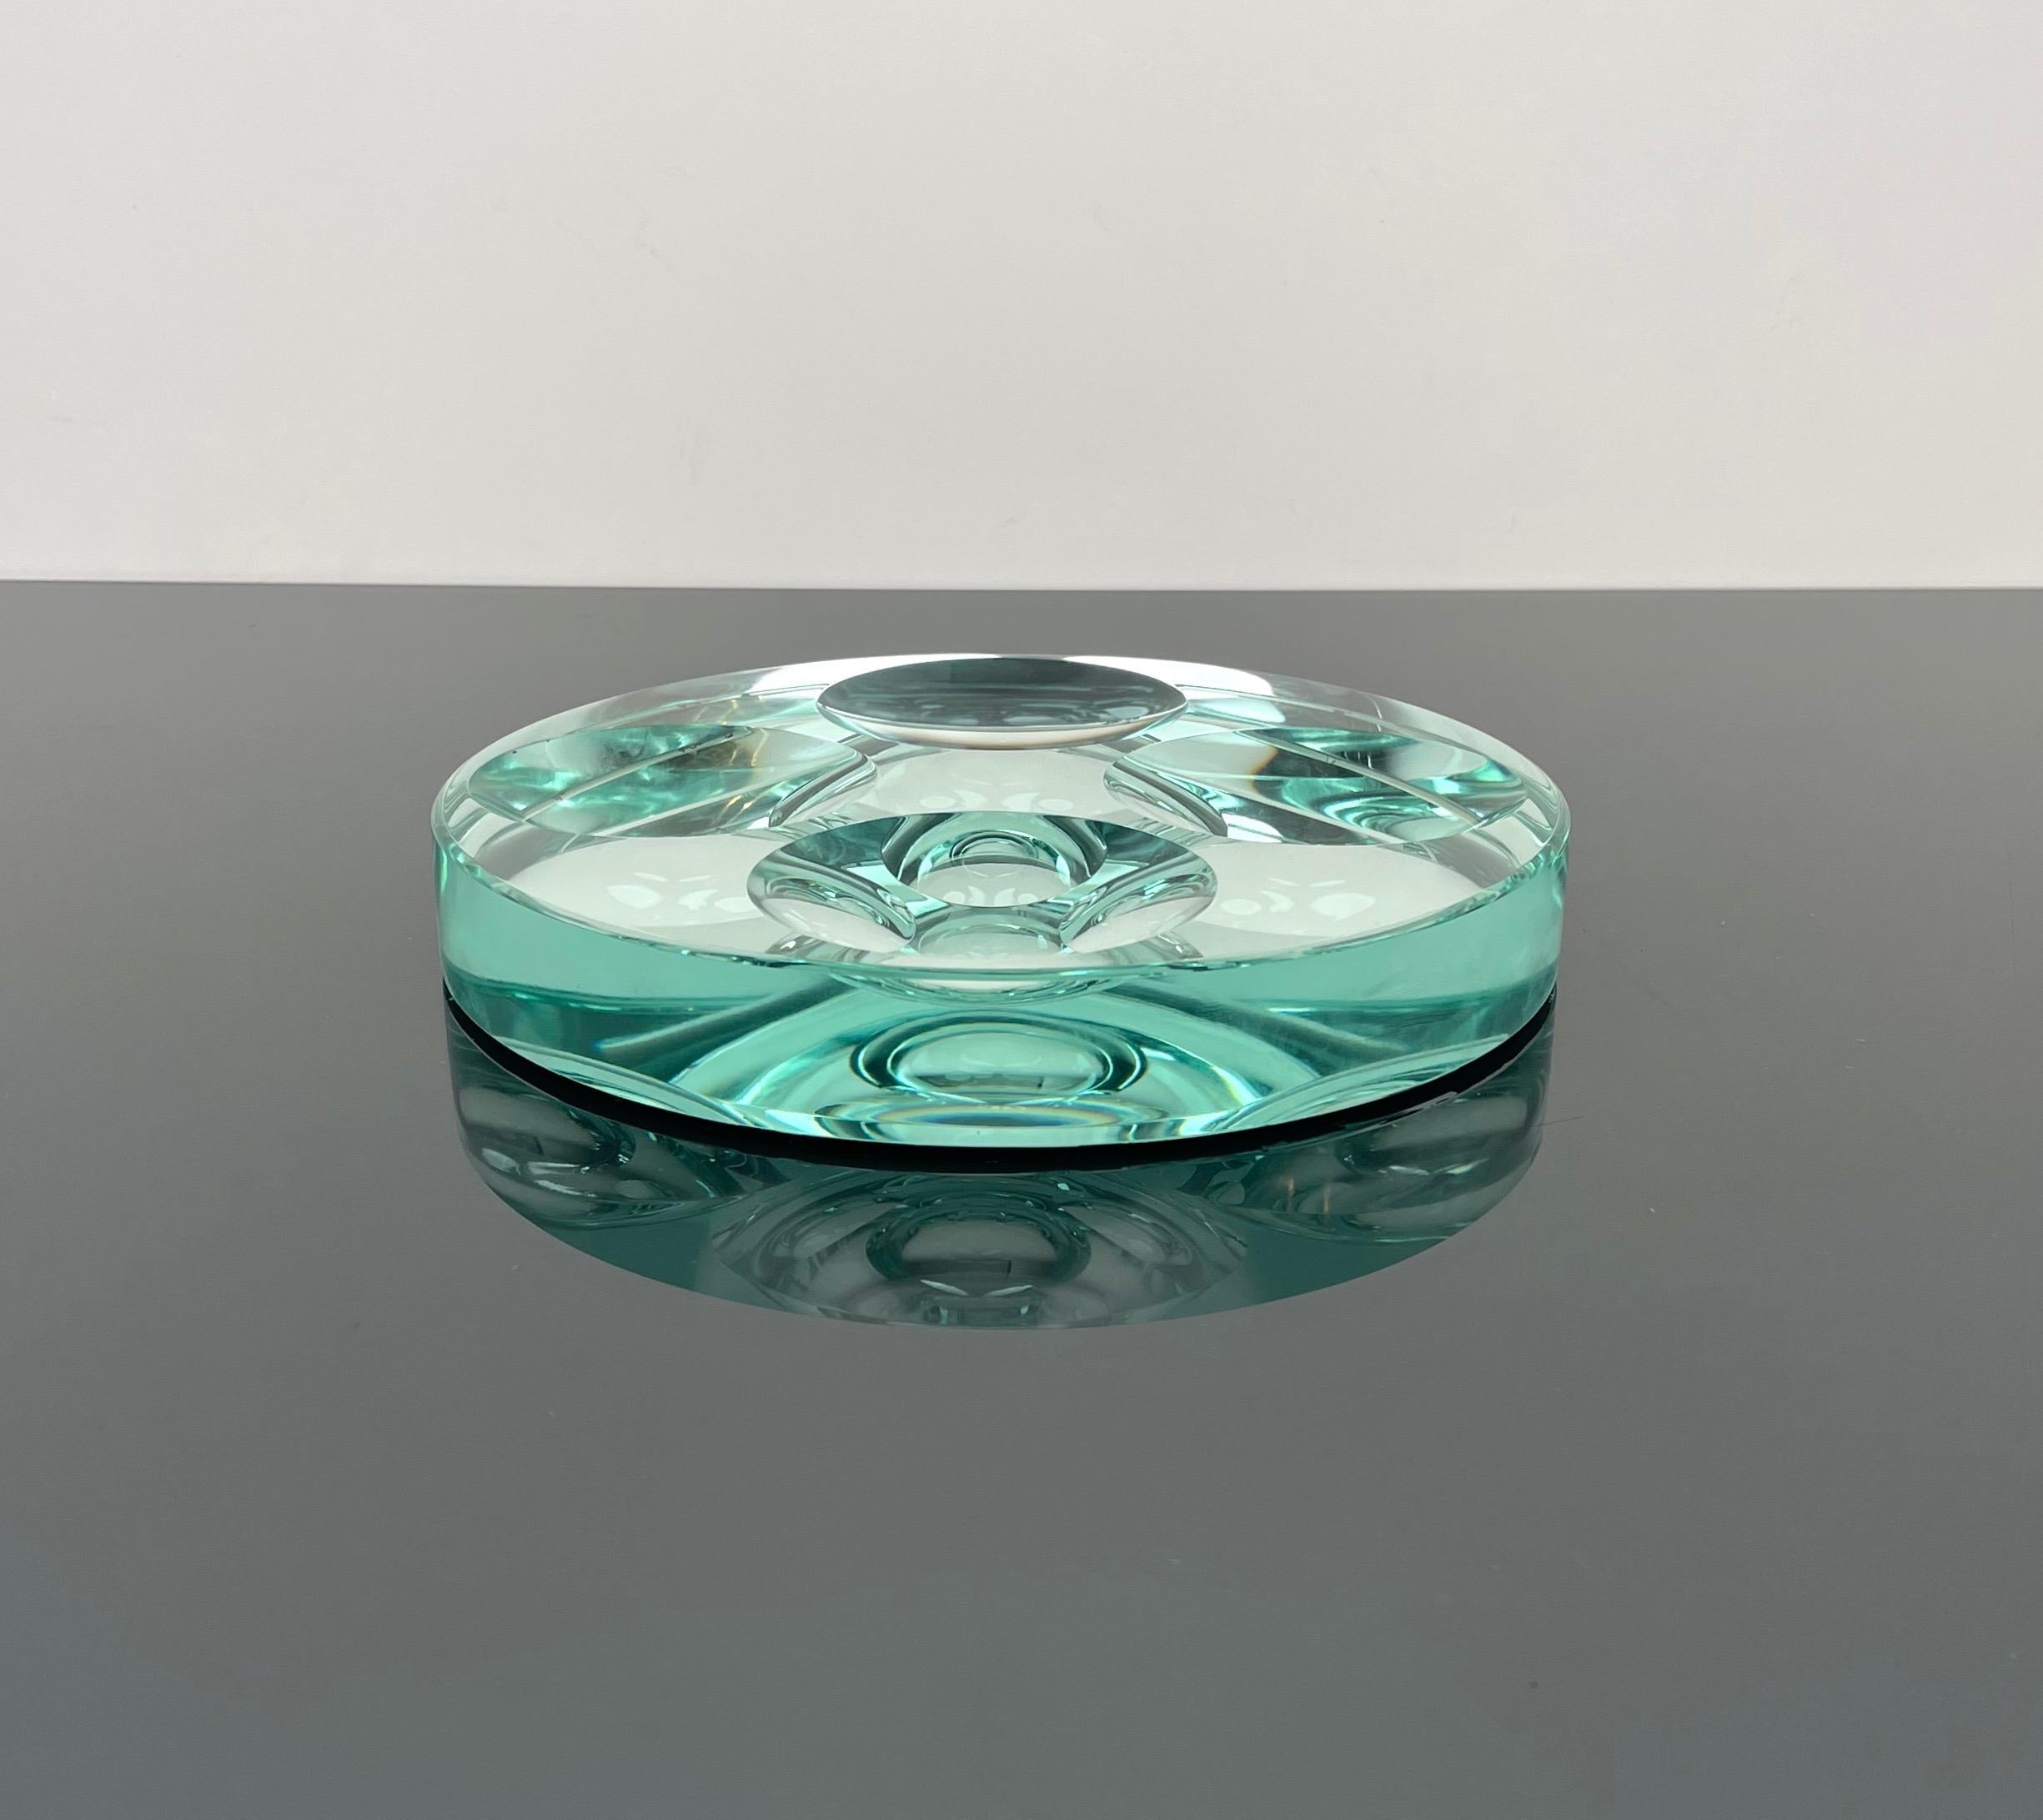 Rare coupe ronde ou cendrier en verre de cristal vert et dessous en miroir avec quatre cercles concaves par Fontana Arte.

Fabriqué en Italie dans les années 1960.